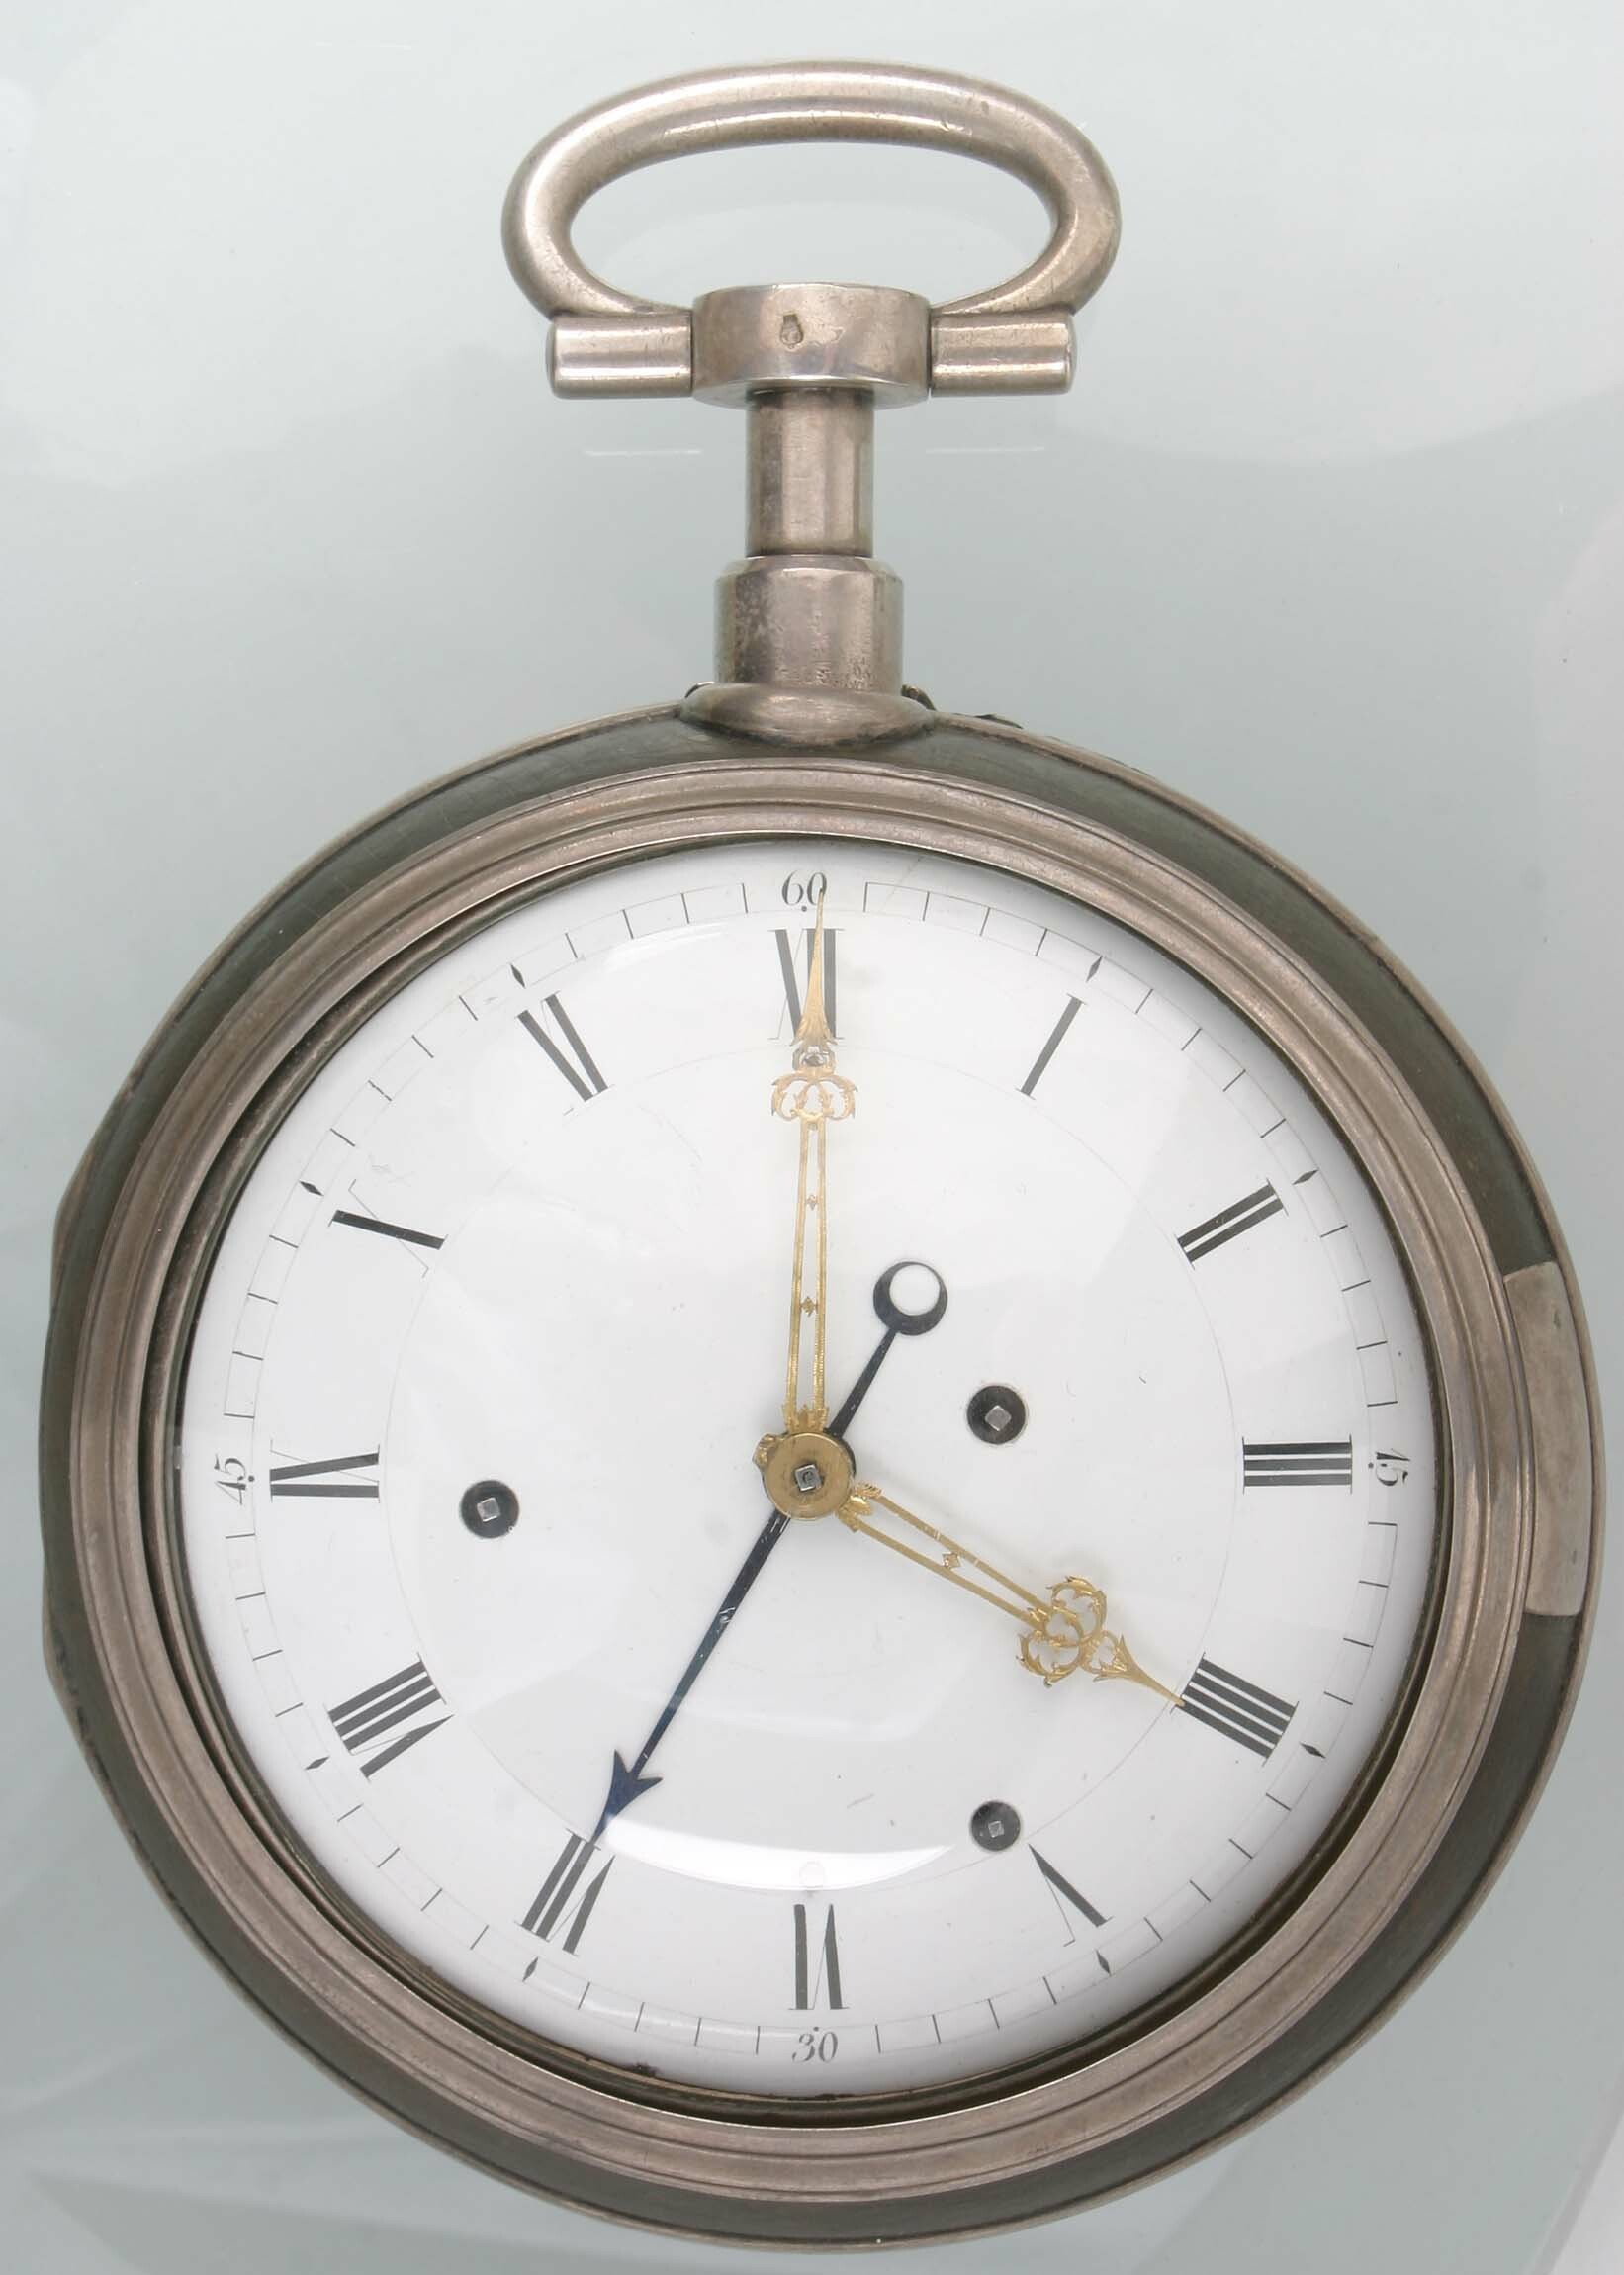 Reiseuhr, sog. "Kutschenuhr", wohl Frankreich, um 1800 (Deutsches Uhrenmuseum CC BY-SA)